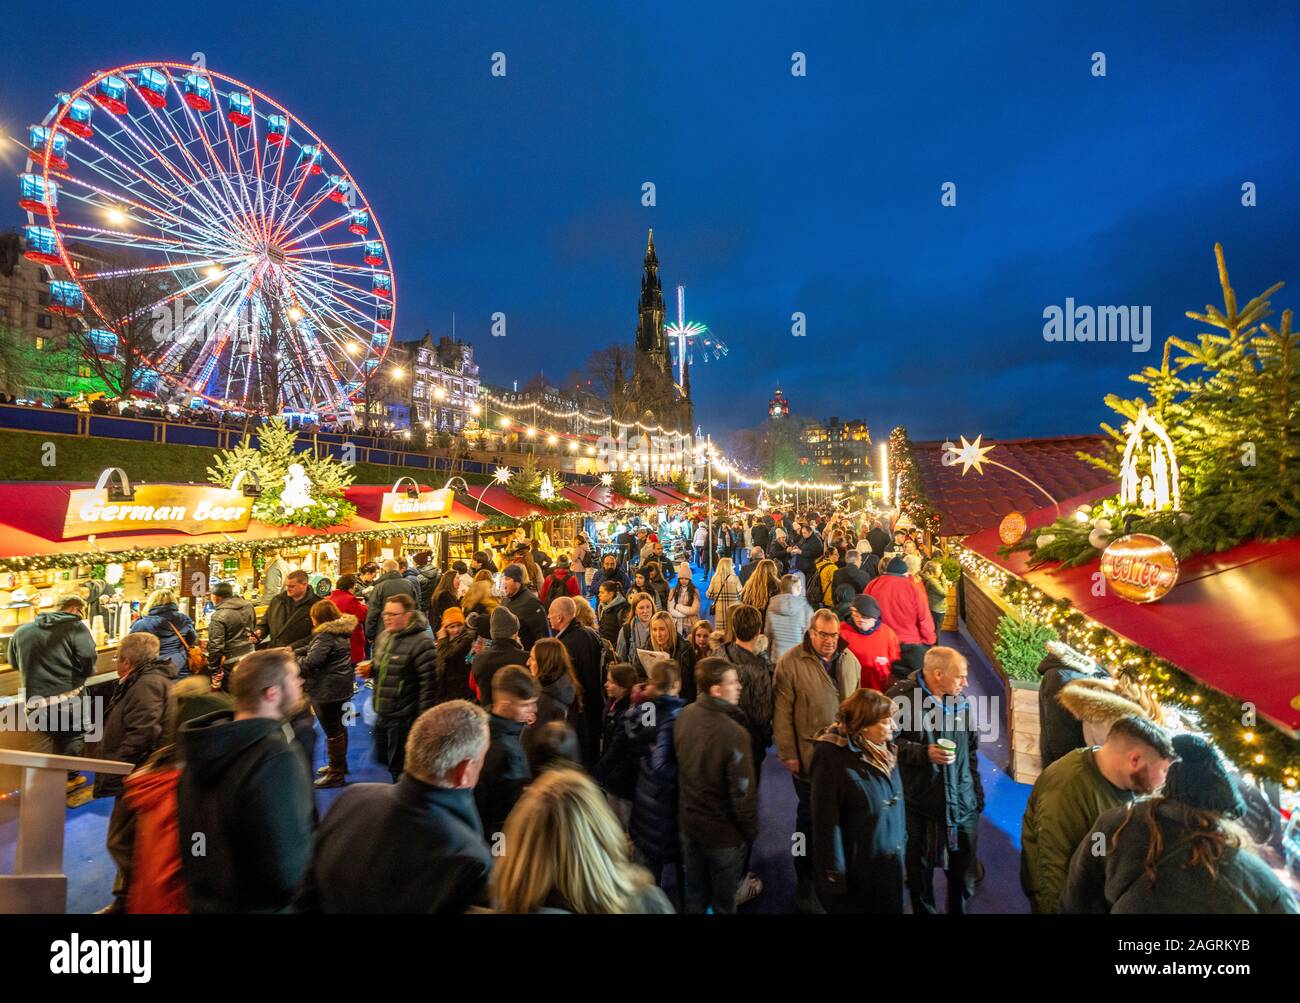 Des foules de gens dans un marché de Noël à Édimbourg West Princes Street Gardens à Édimbourg, Écosse, Royaume-Uni Banque D'Images